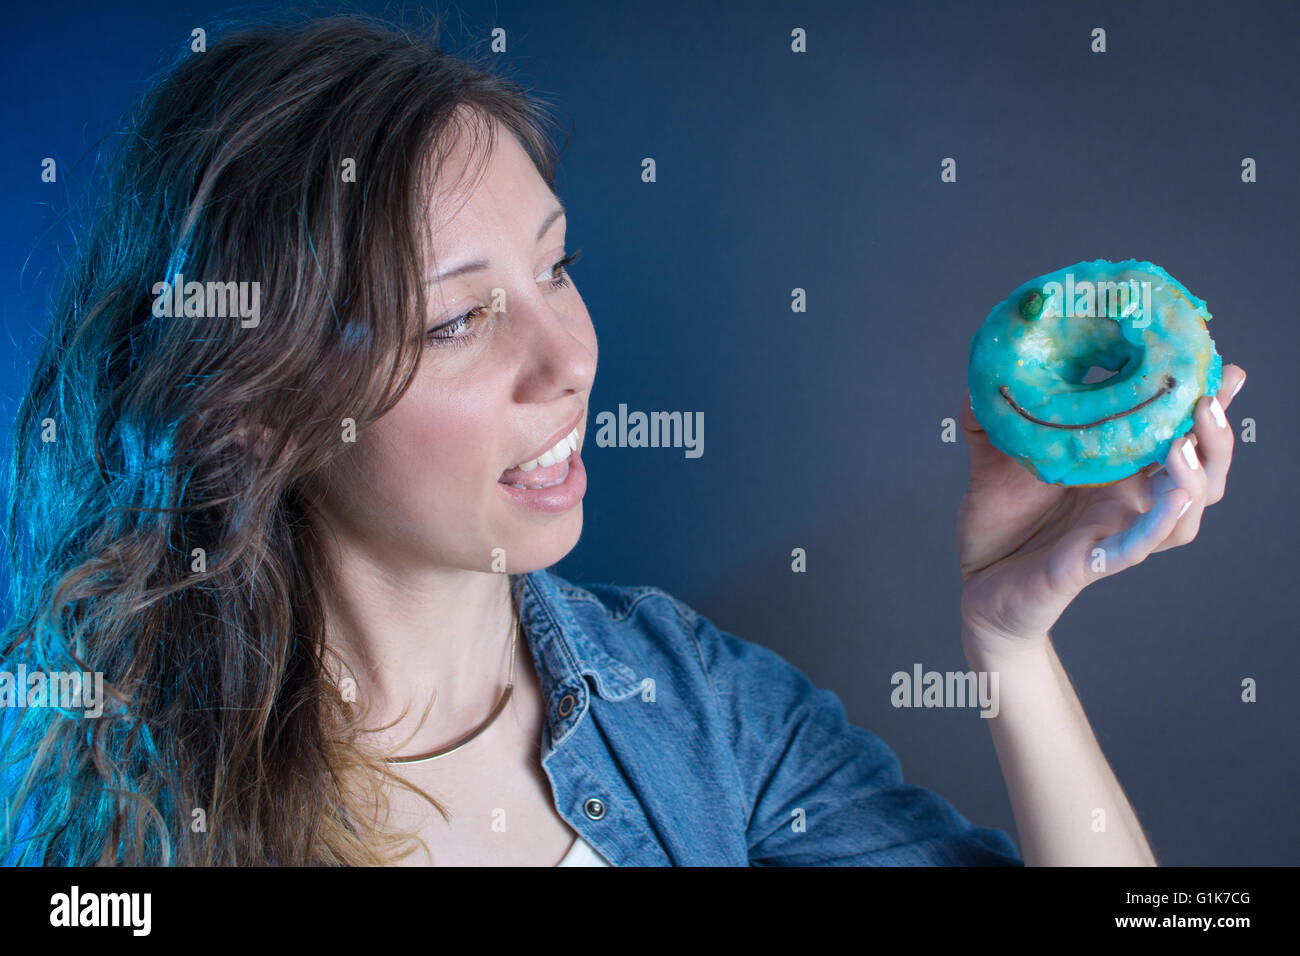 Girl holding a blue smiley face doughnut Stock Photo